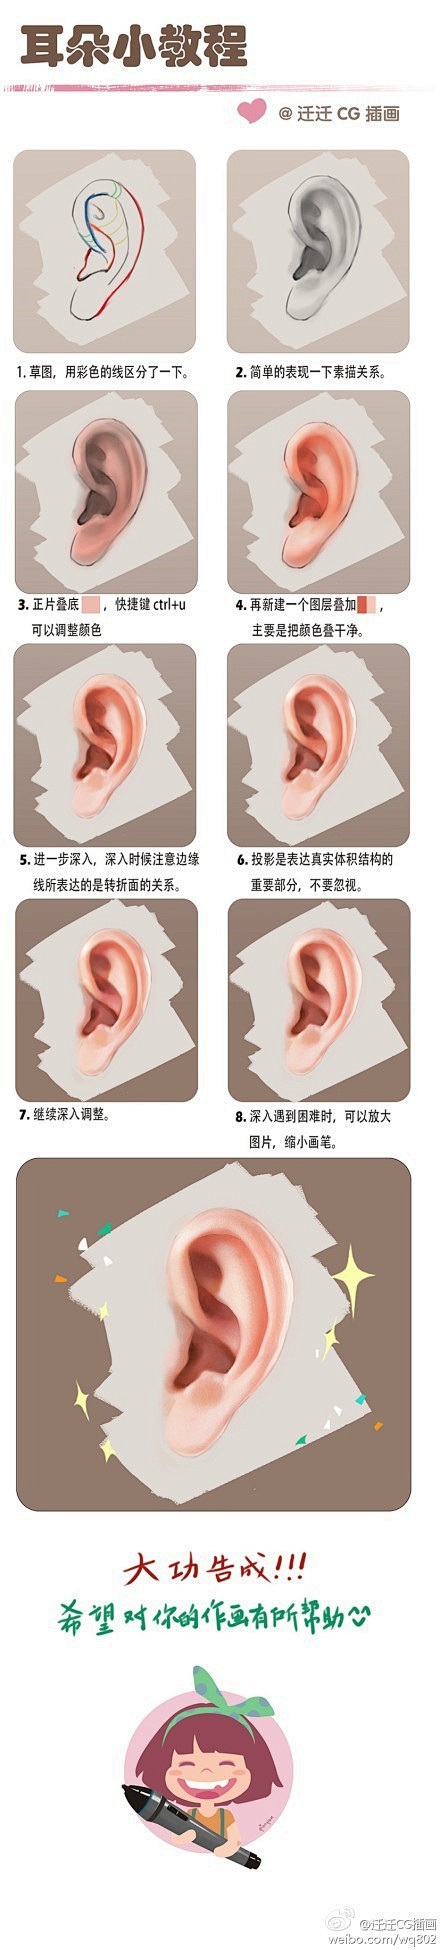 【基础教材】耳朵的详细绘画教程~推荐给大...